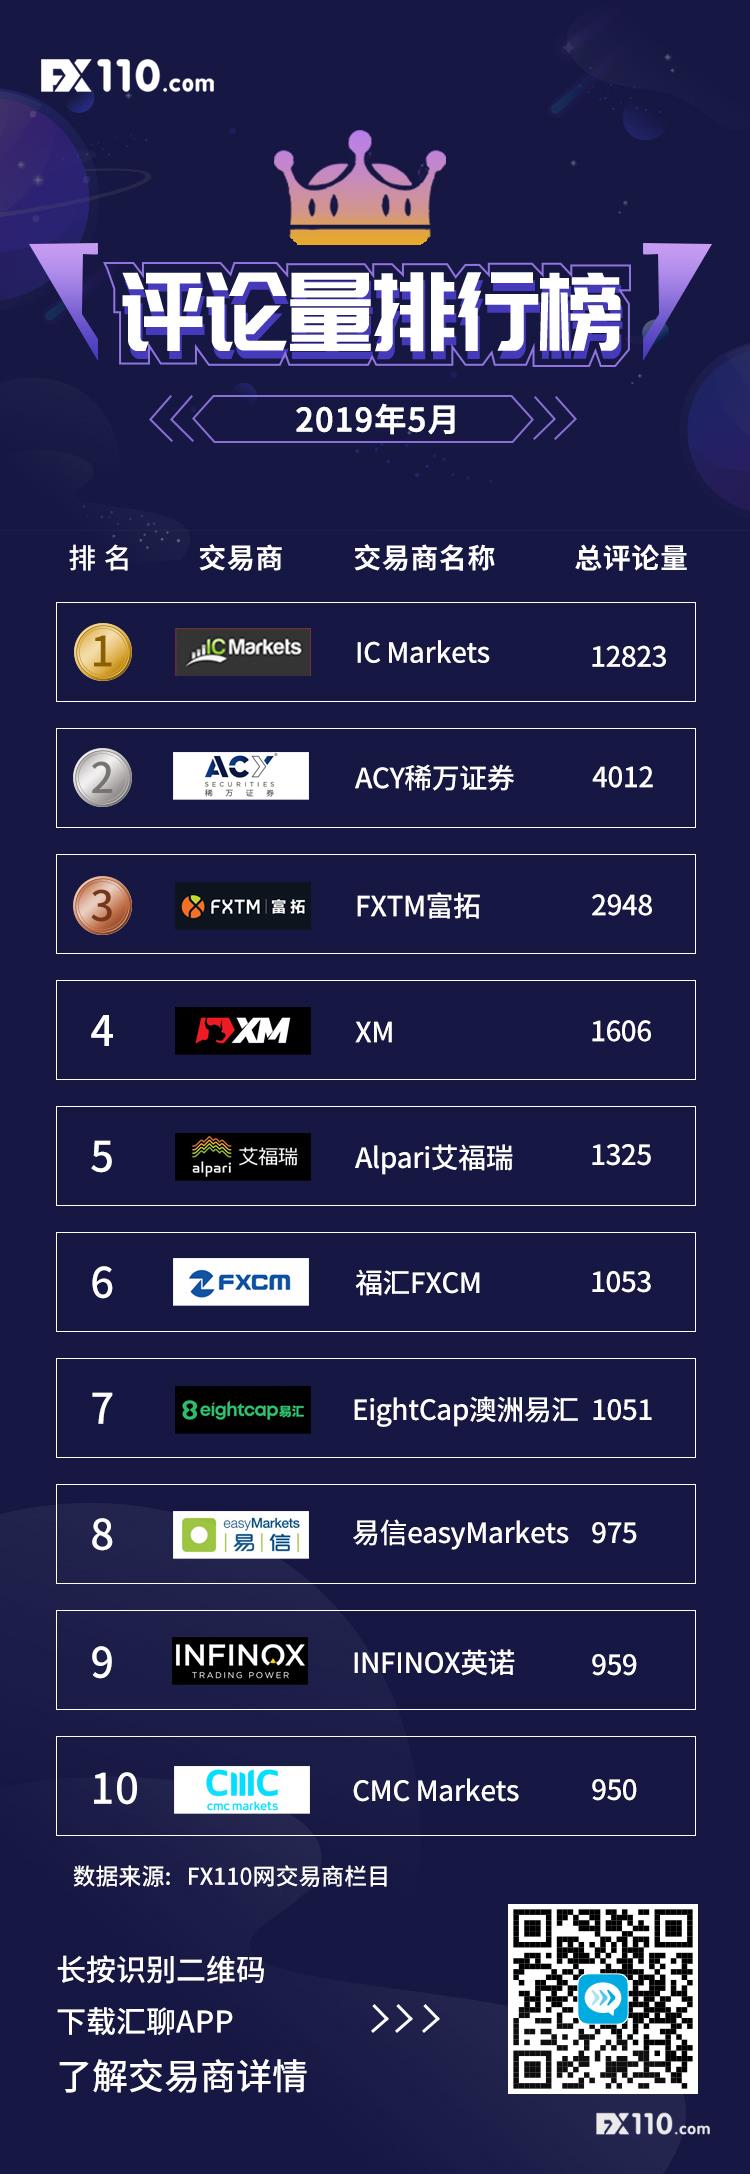 【榜单】2019年5月交易商评论量TOP10排行榜